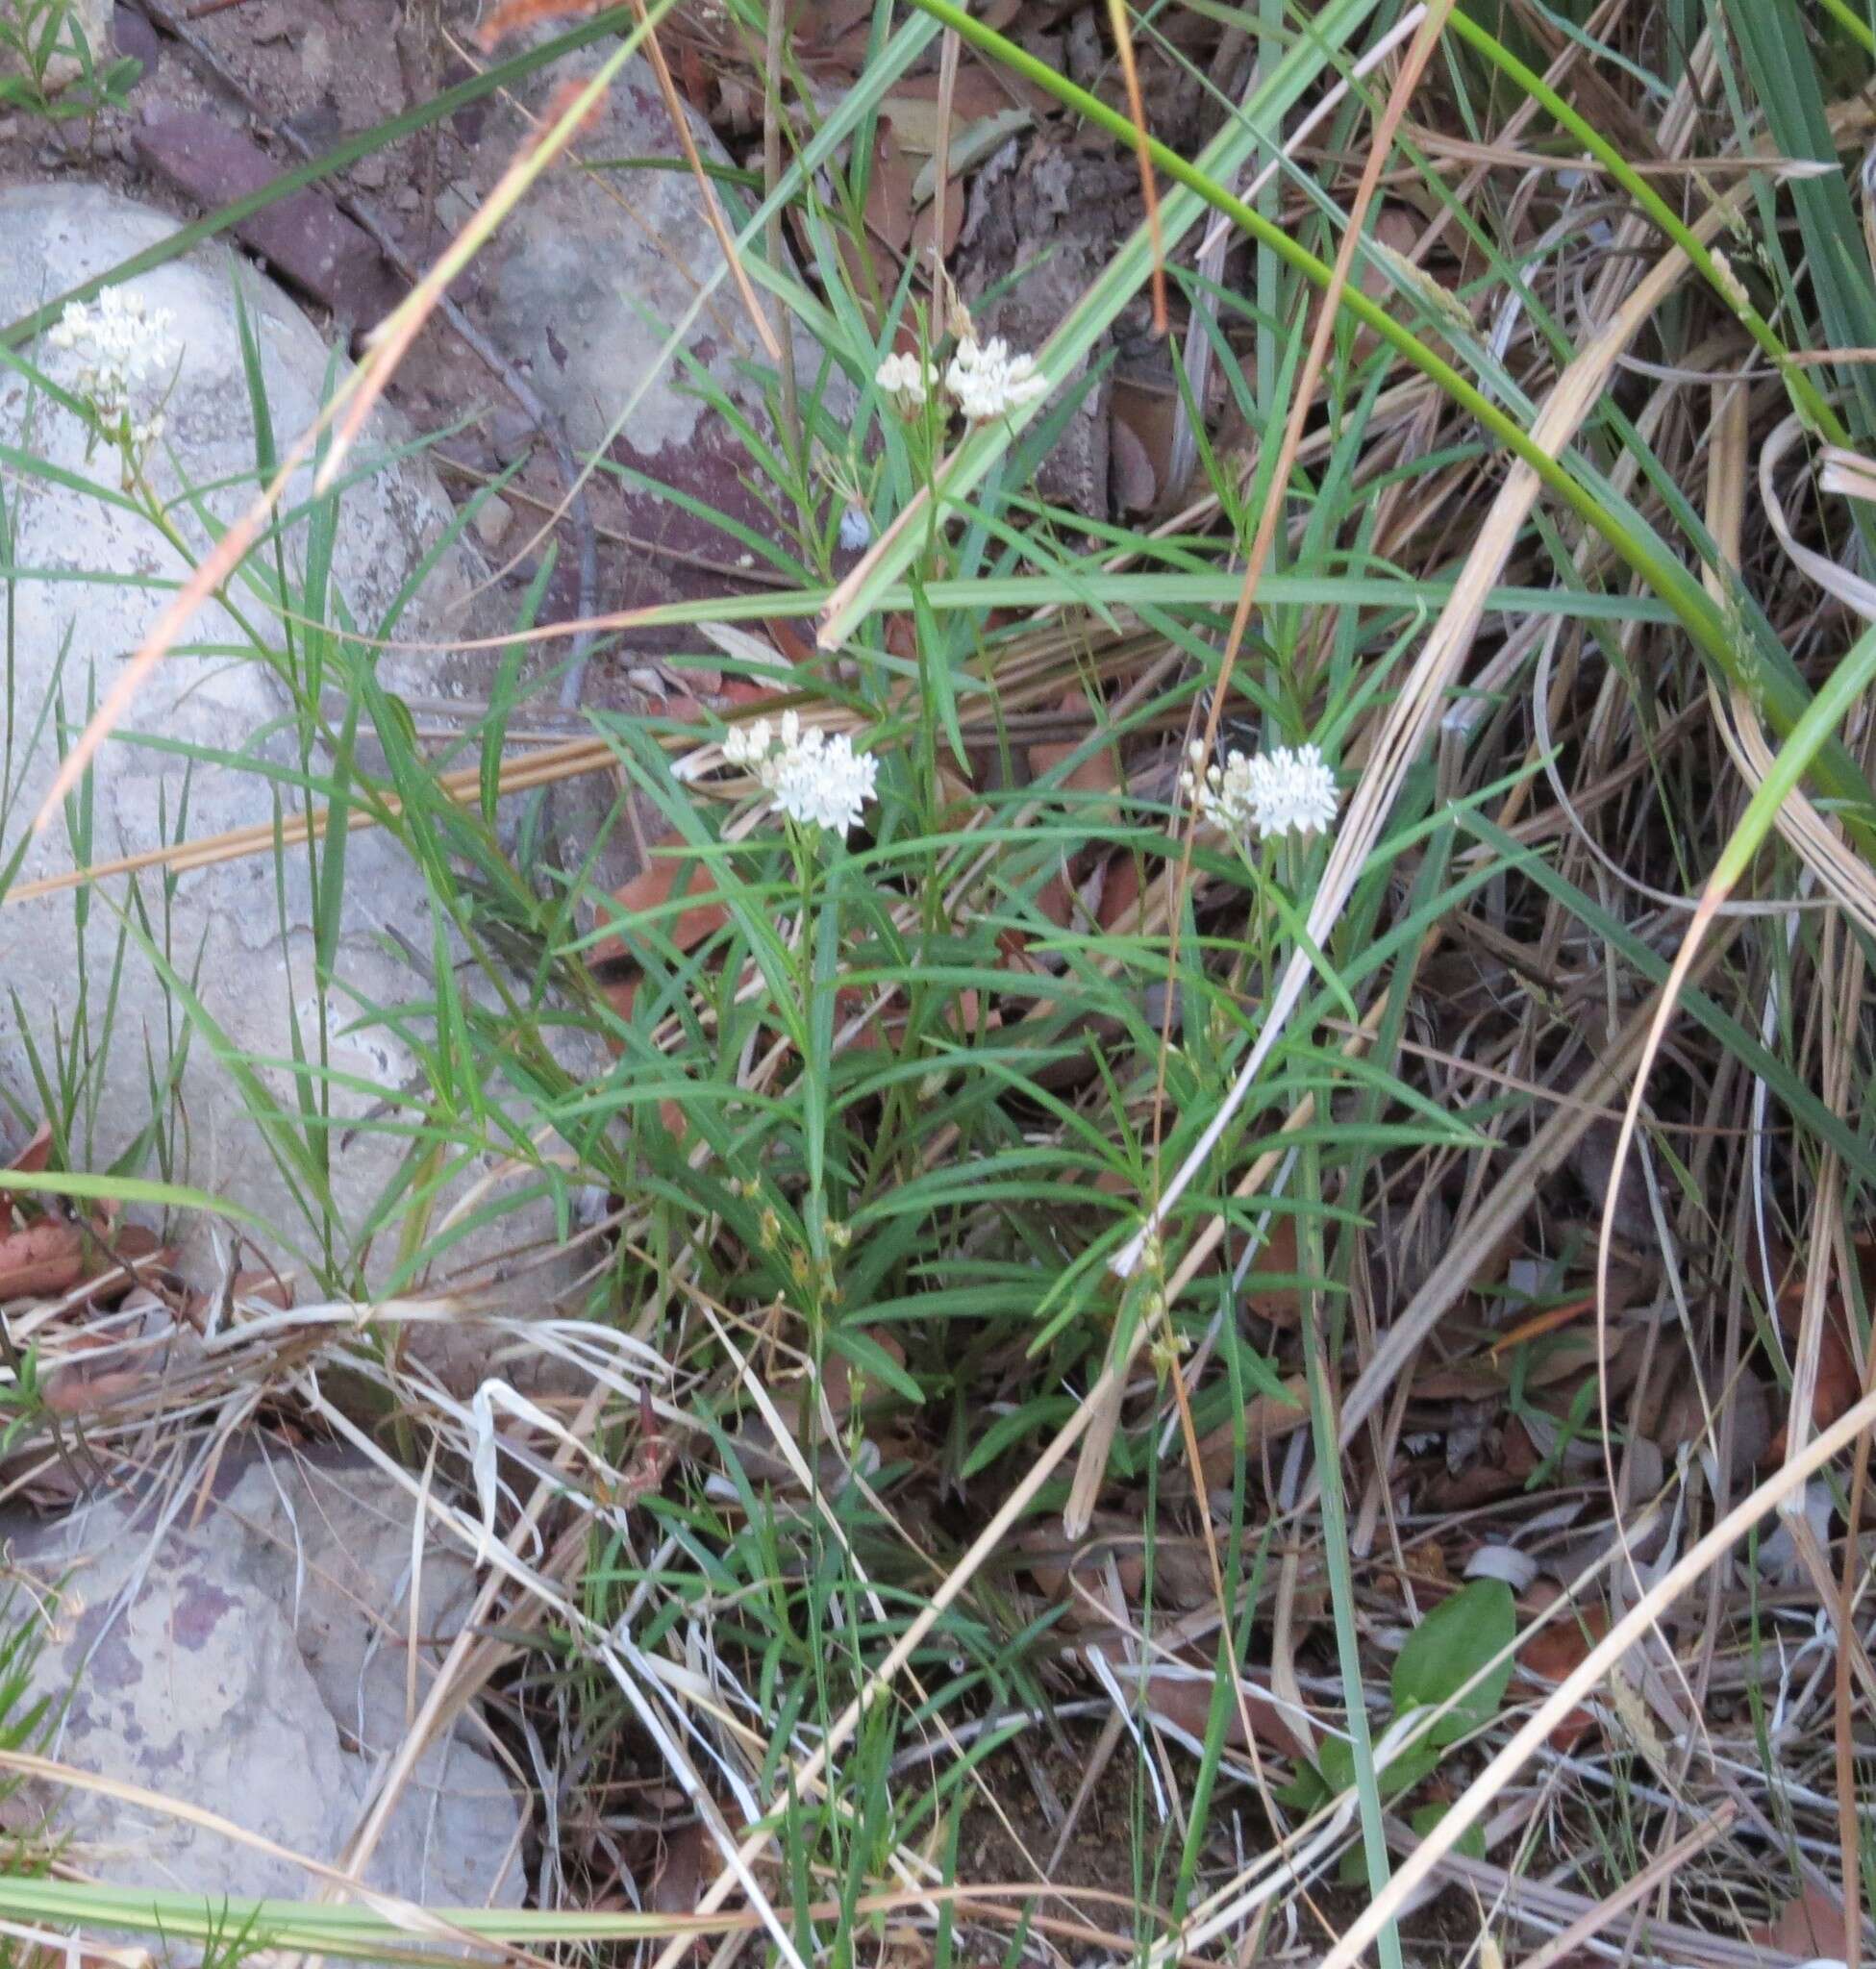 Image of Arizona milkweed